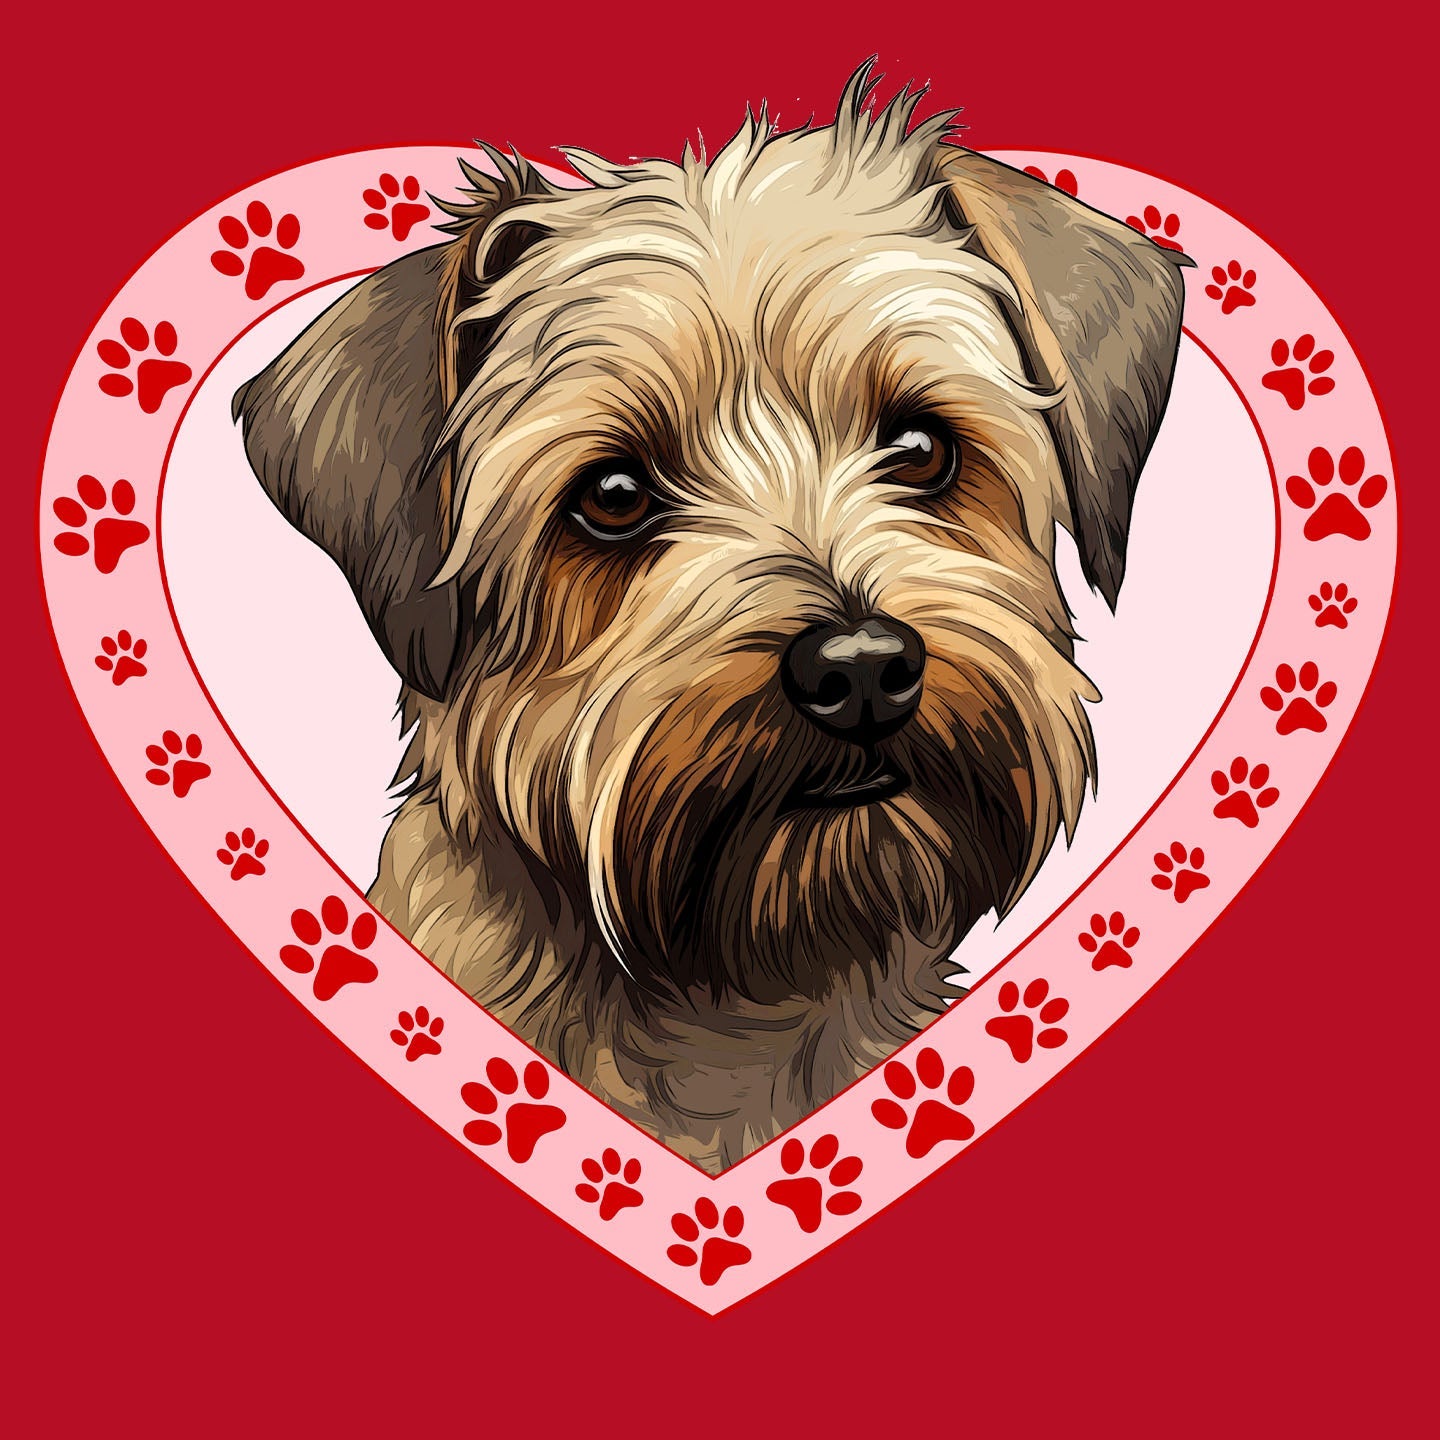 Glen of Imaal Terrier Illustration In Heart - Women's V-Neck T-Shirt